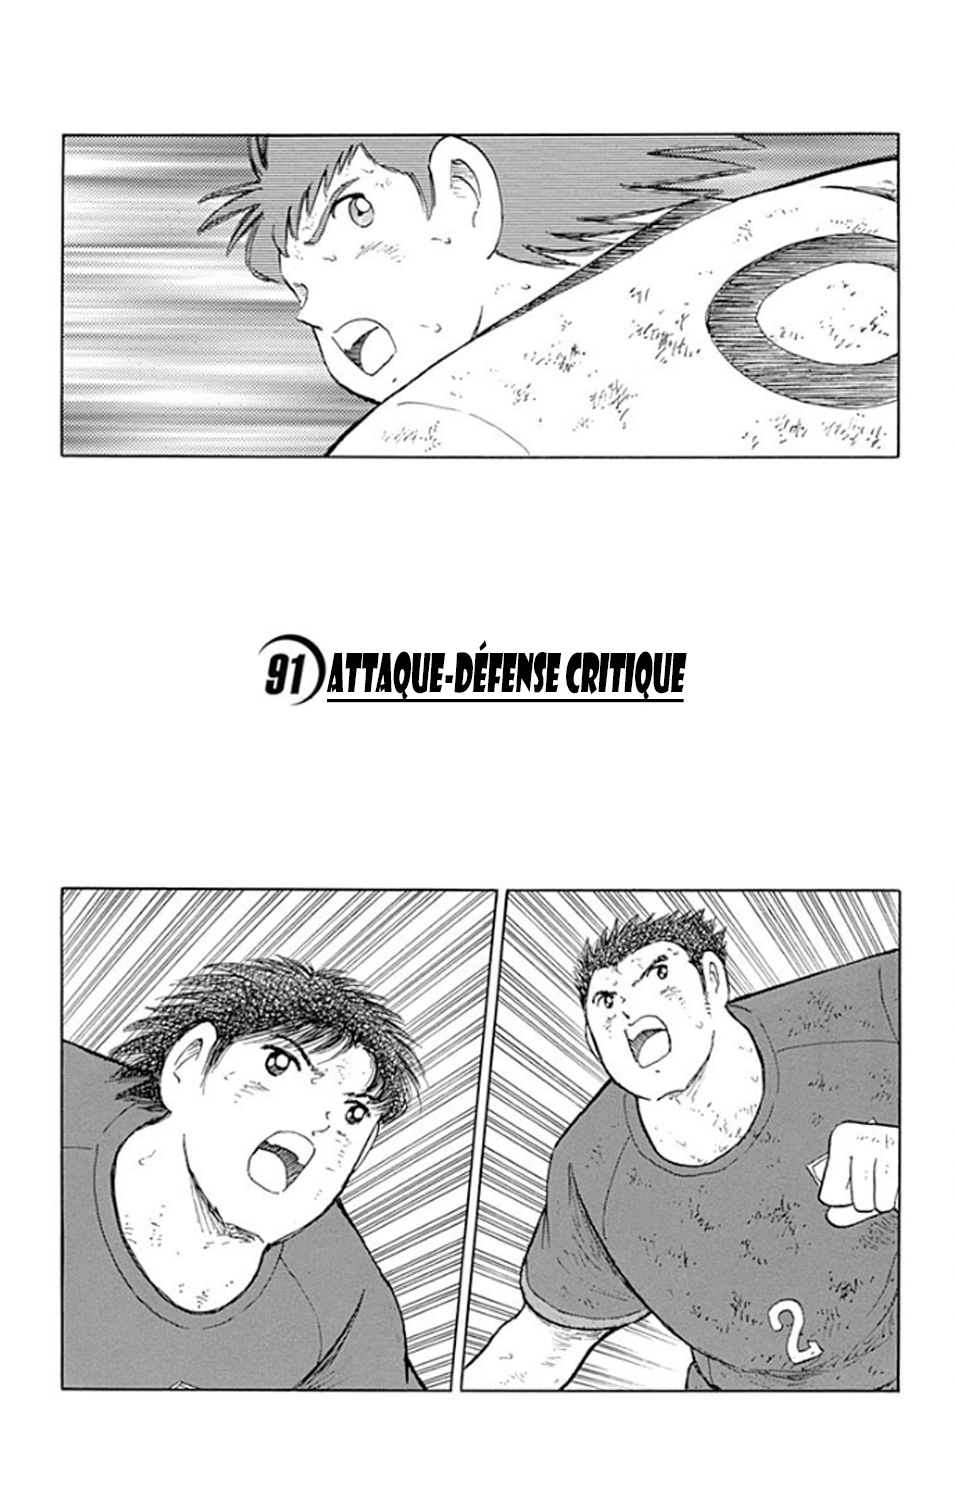 Captain Tsubasa - Rising Sun: Chapter 91 - Page 1